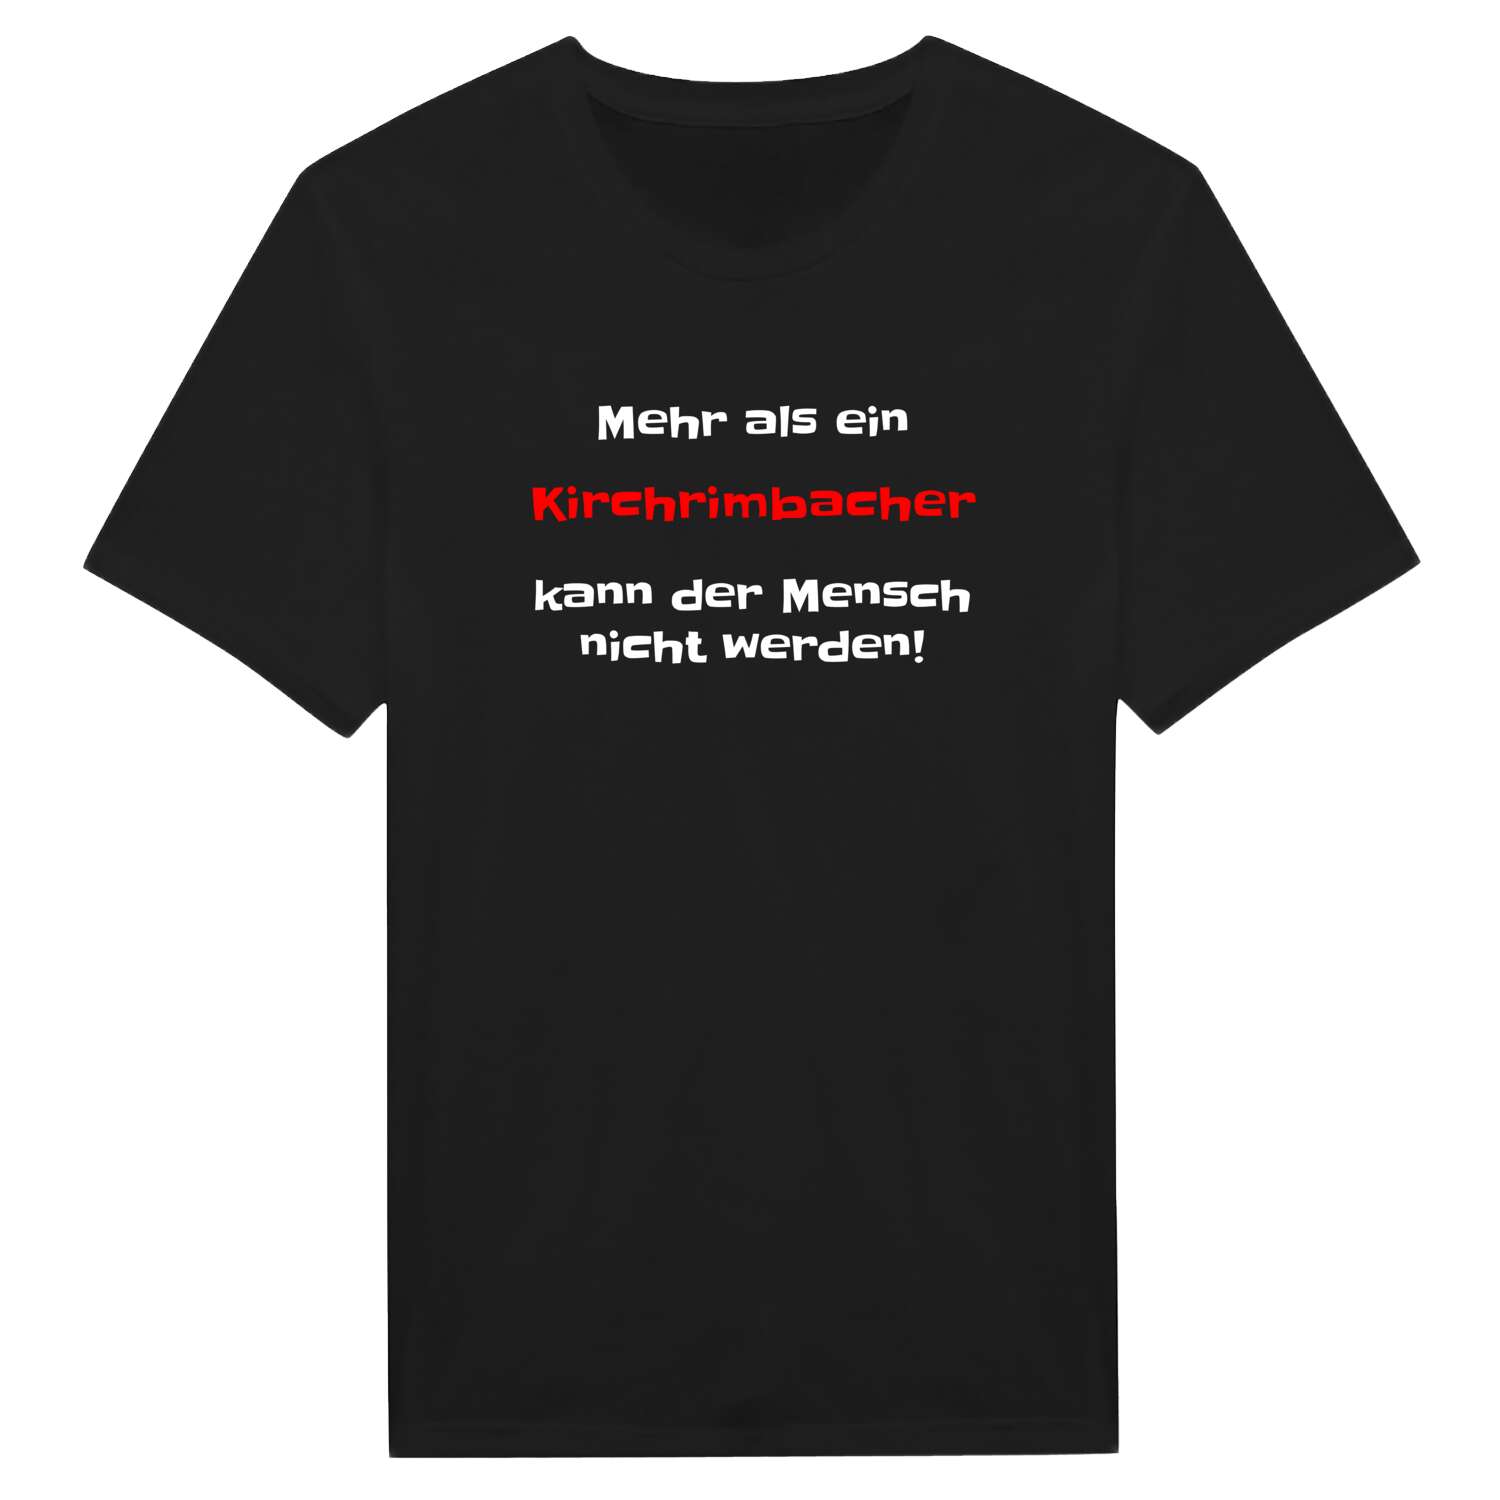 Kirchrimbach T-Shirt »Mehr als ein«